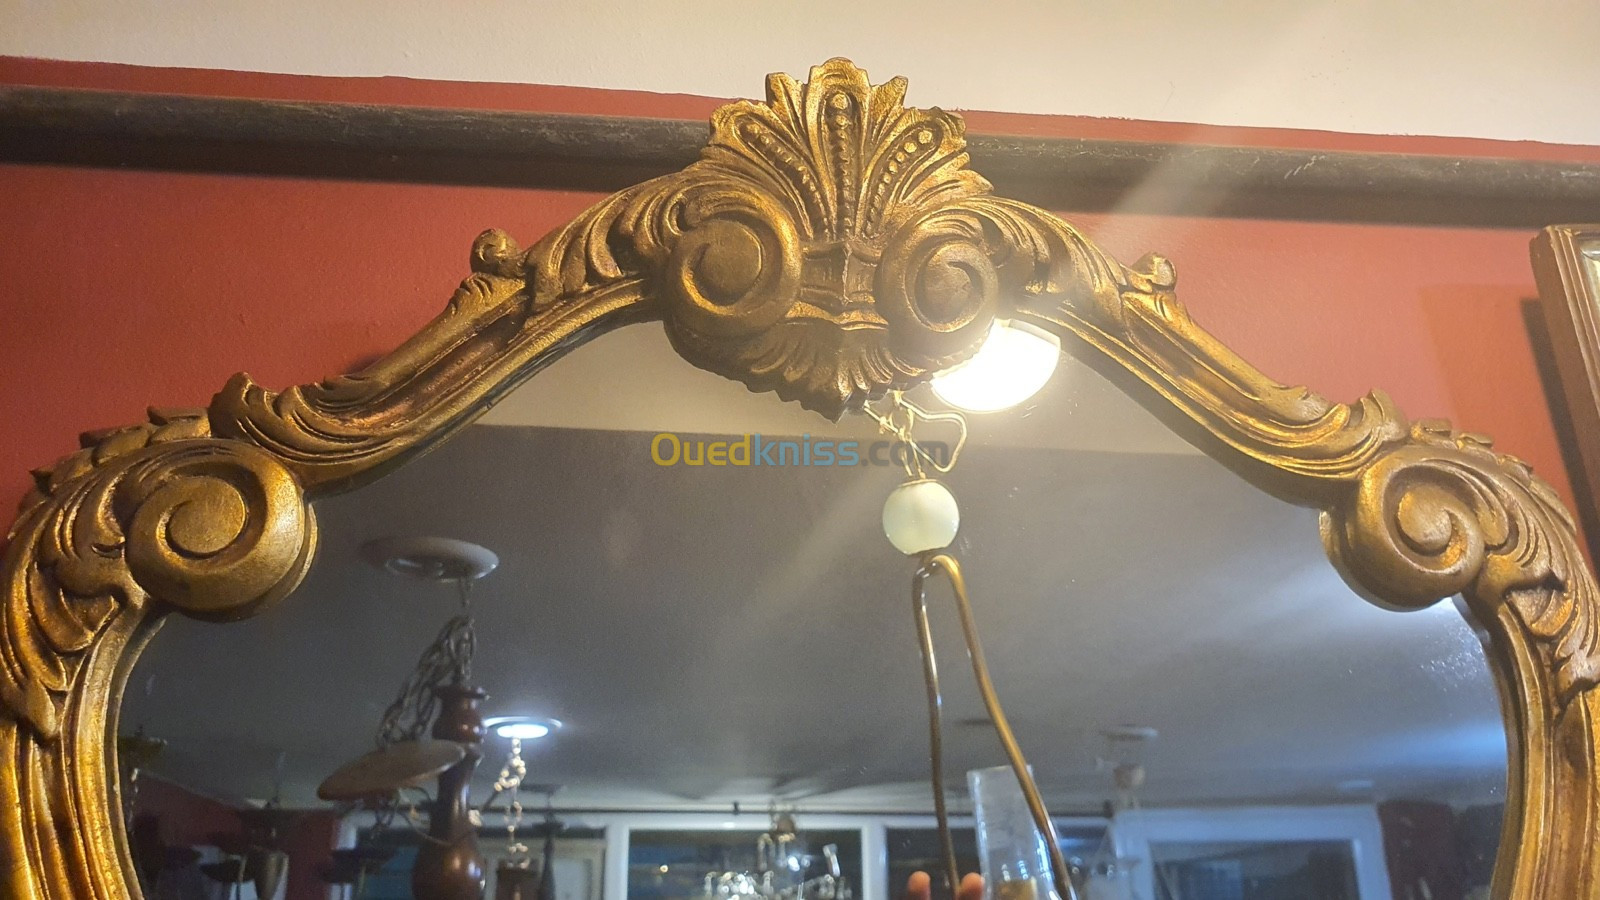 Miroir en bois style Louis XV doré à la feuille d'or